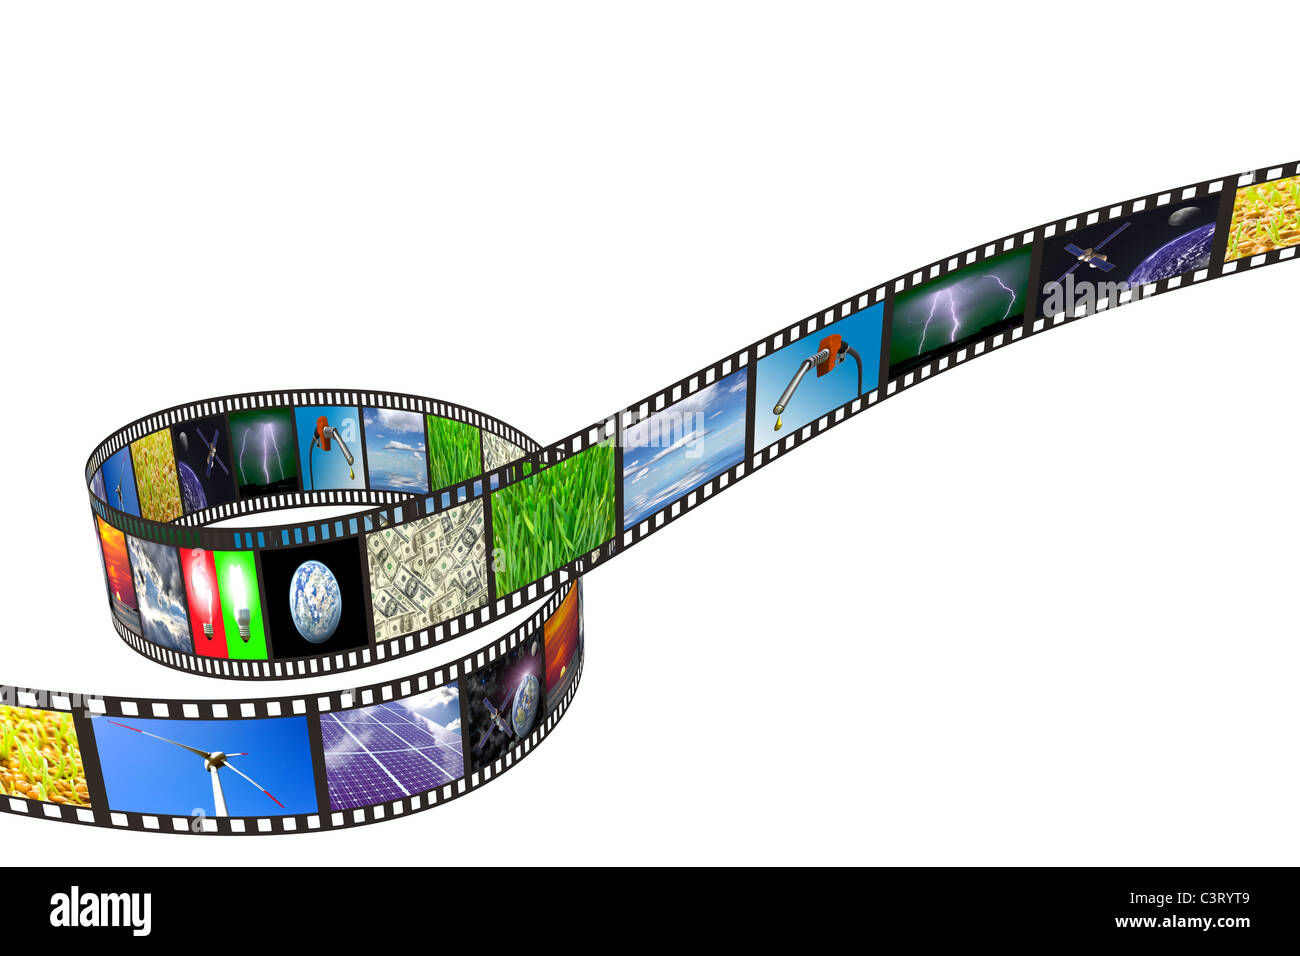 Film fixe avec la technologie, de l'énergie et l'environnement des images sur fond blanc Banque D'Images